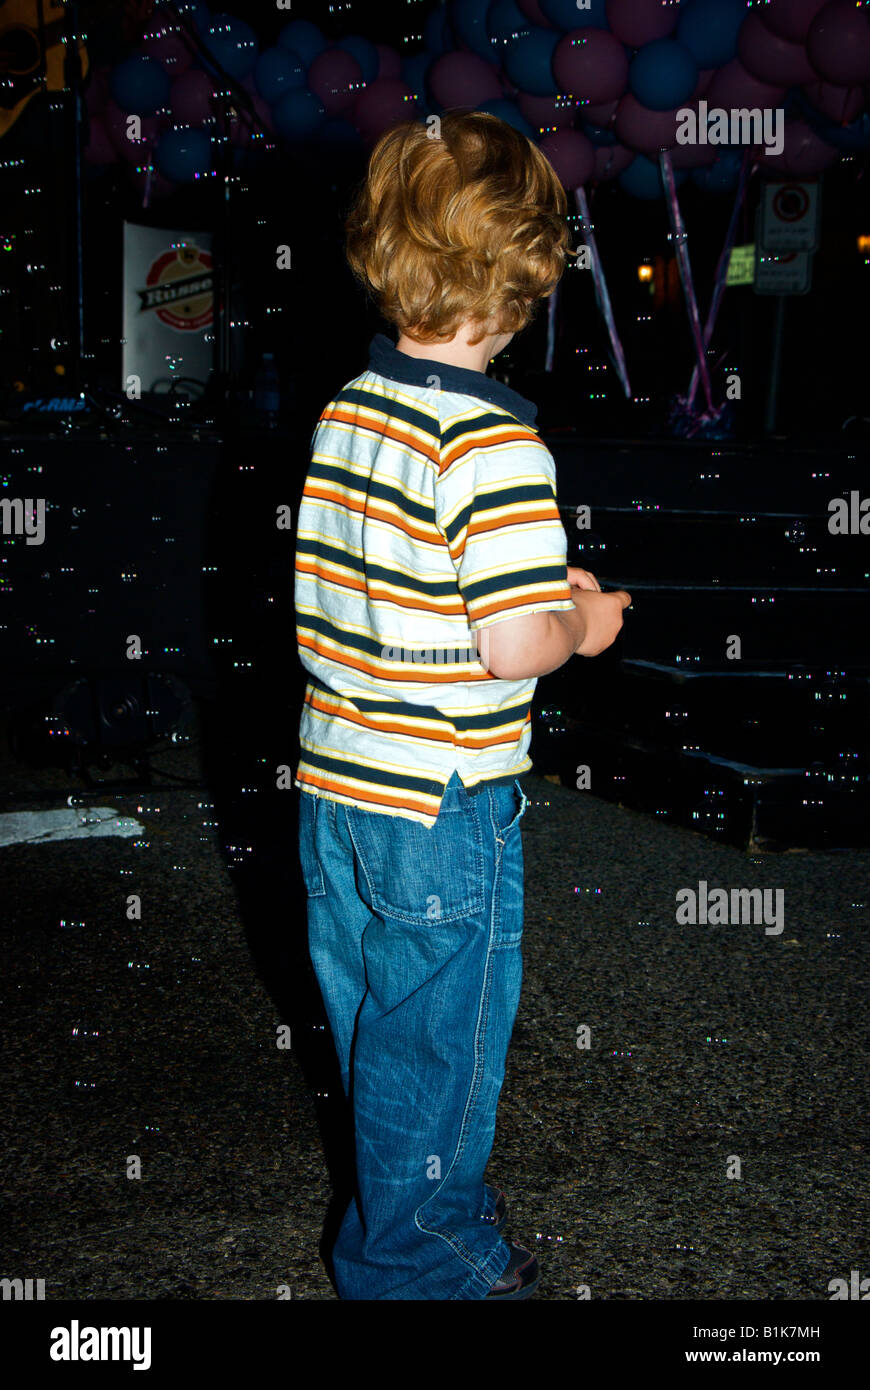 Jeune garçon jouer en face d'une machine à bulle de savon lors d'un concert à la mort Pas encore d'événements de bienfaisance Banque D'Images